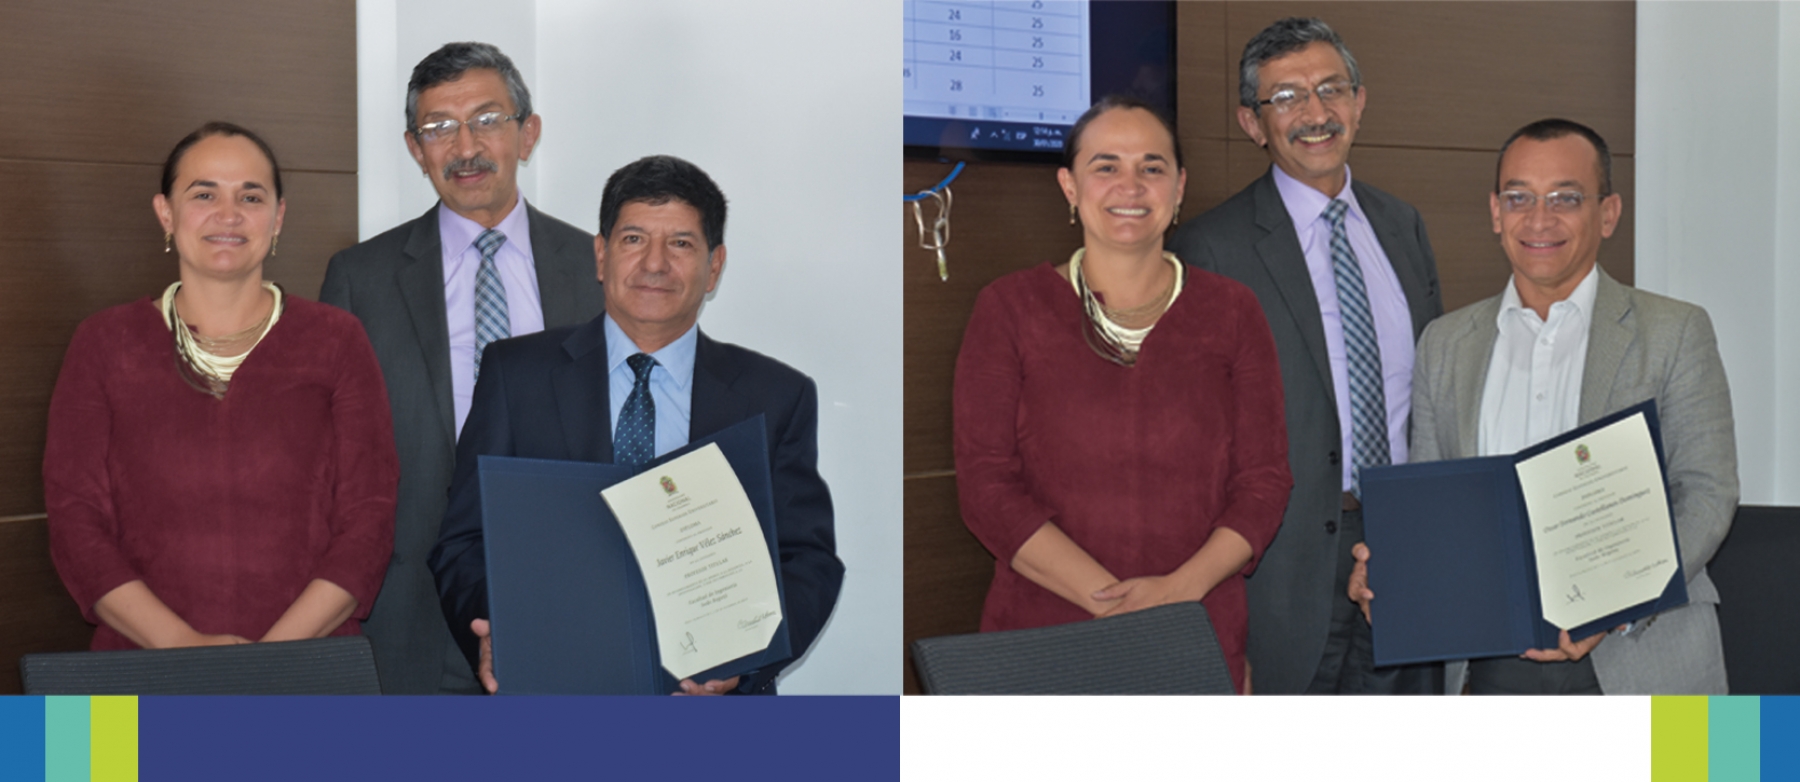 El Concejo de la Facultad de Ingeniería entregó los diplomas en la categoría «Profesor Titular» 2020